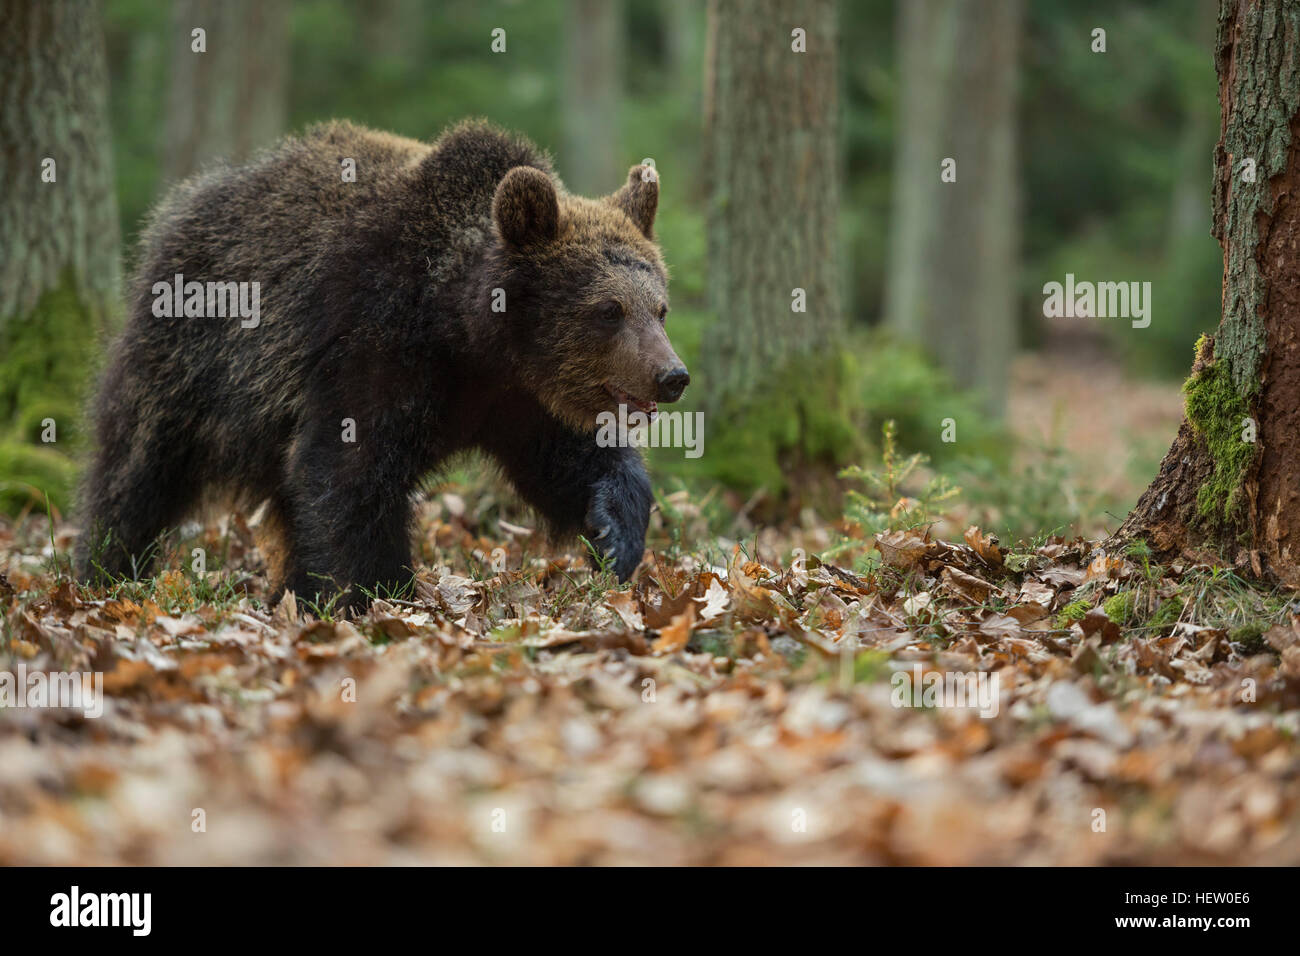 Unione orso bruno / Braunbaer ( Ursus arctos ), giovani, passeggiate / passeggiando in una foresta, esplorare le zone circostanti. Foto Stock